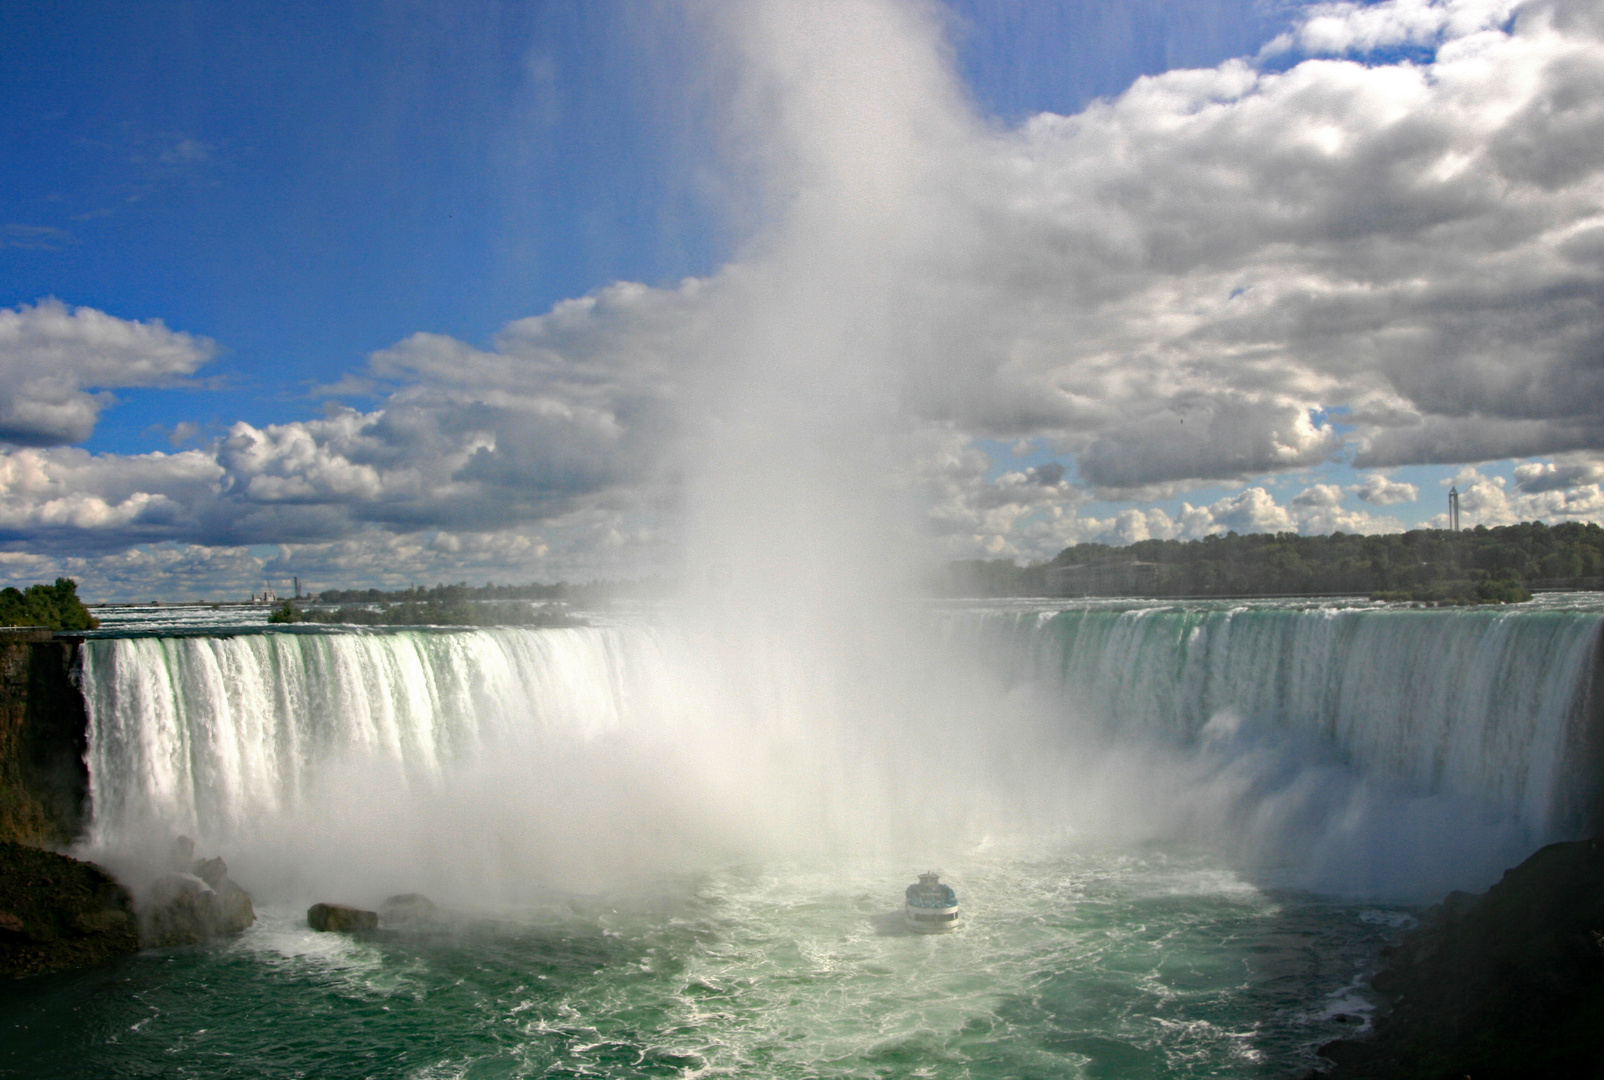 Niagarafälle von kanadischer Seite